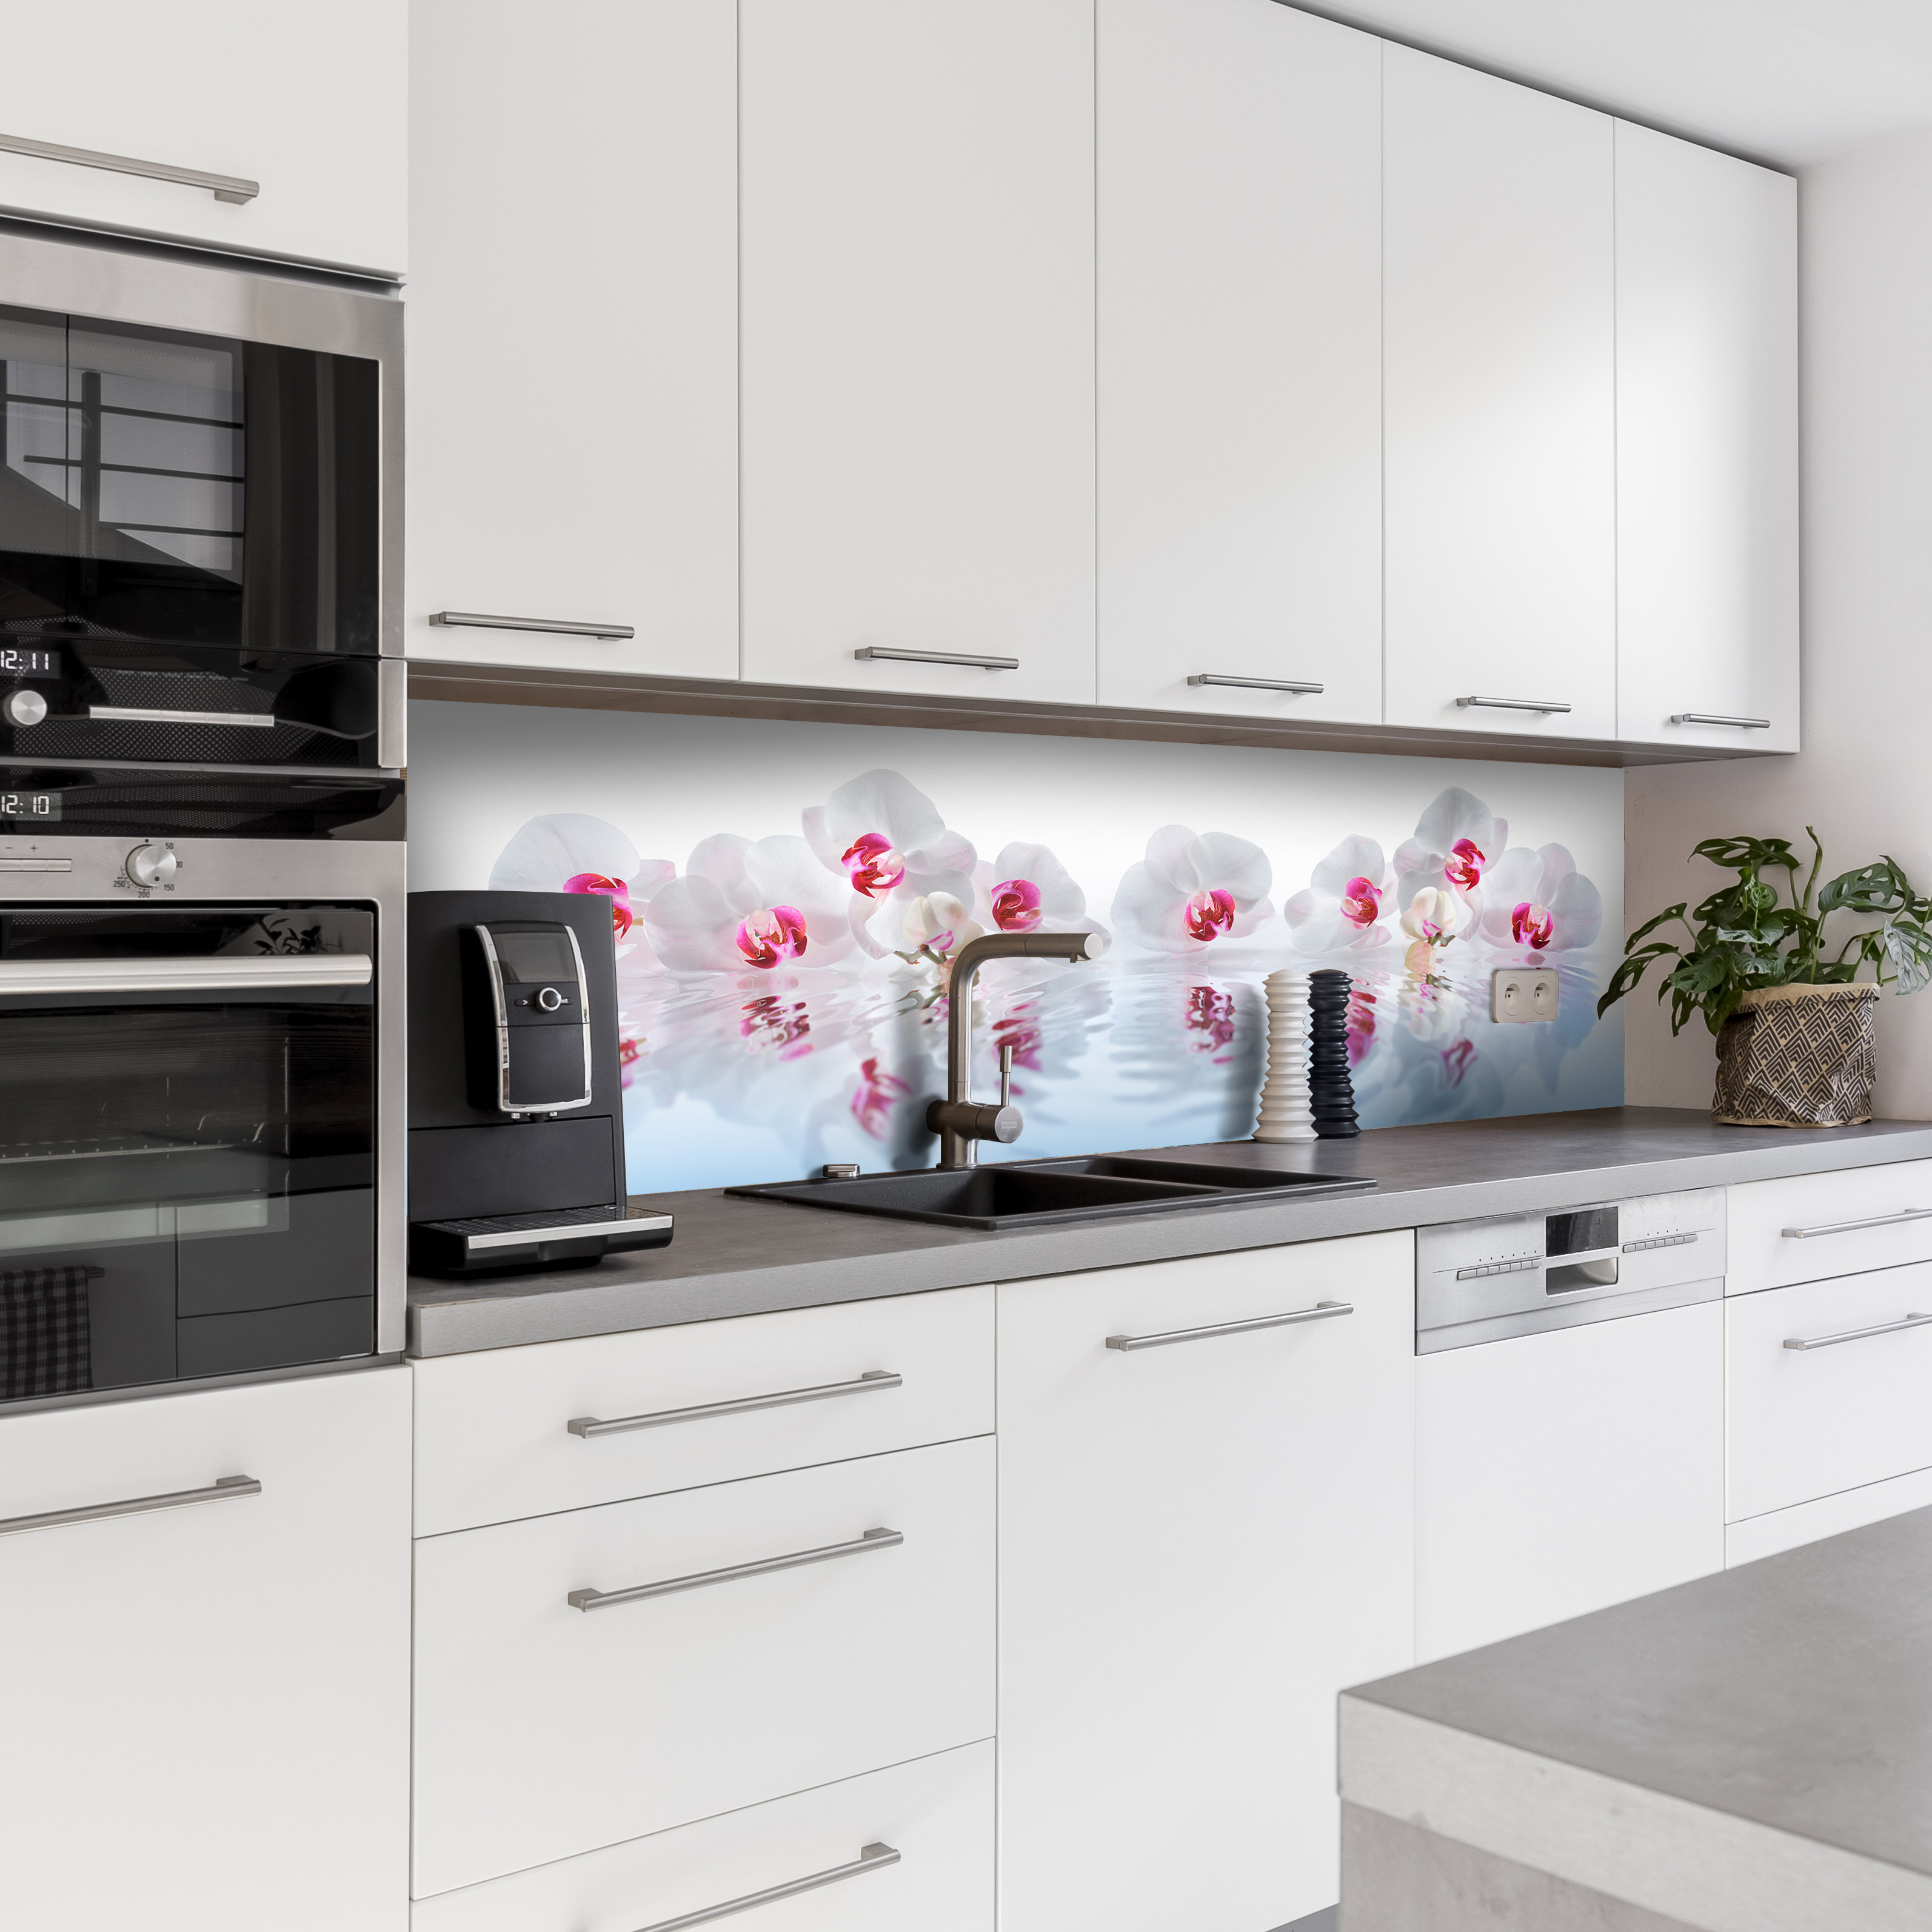 Küchenrückwand mit Blumen V1 Motiv als Fliesenersatz und Spritzschutz